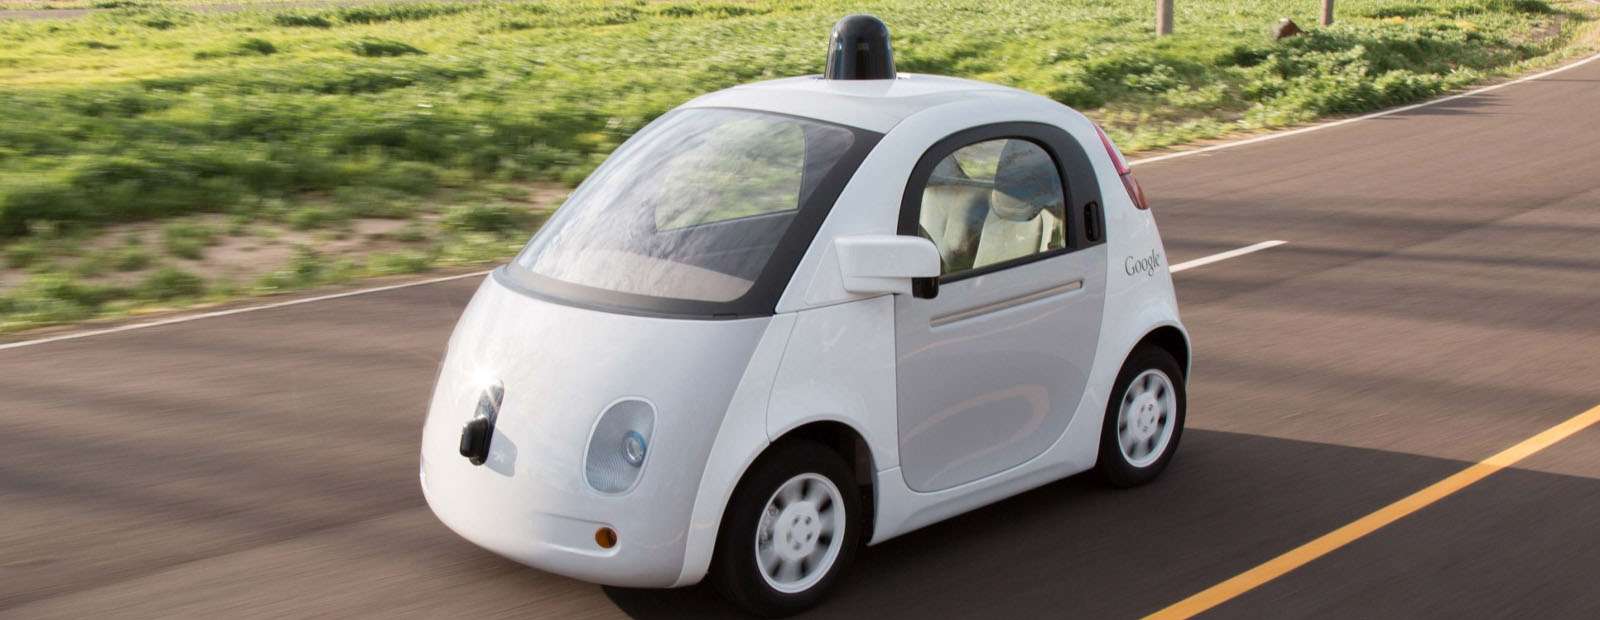 Новый беспилотный автомобиль Google